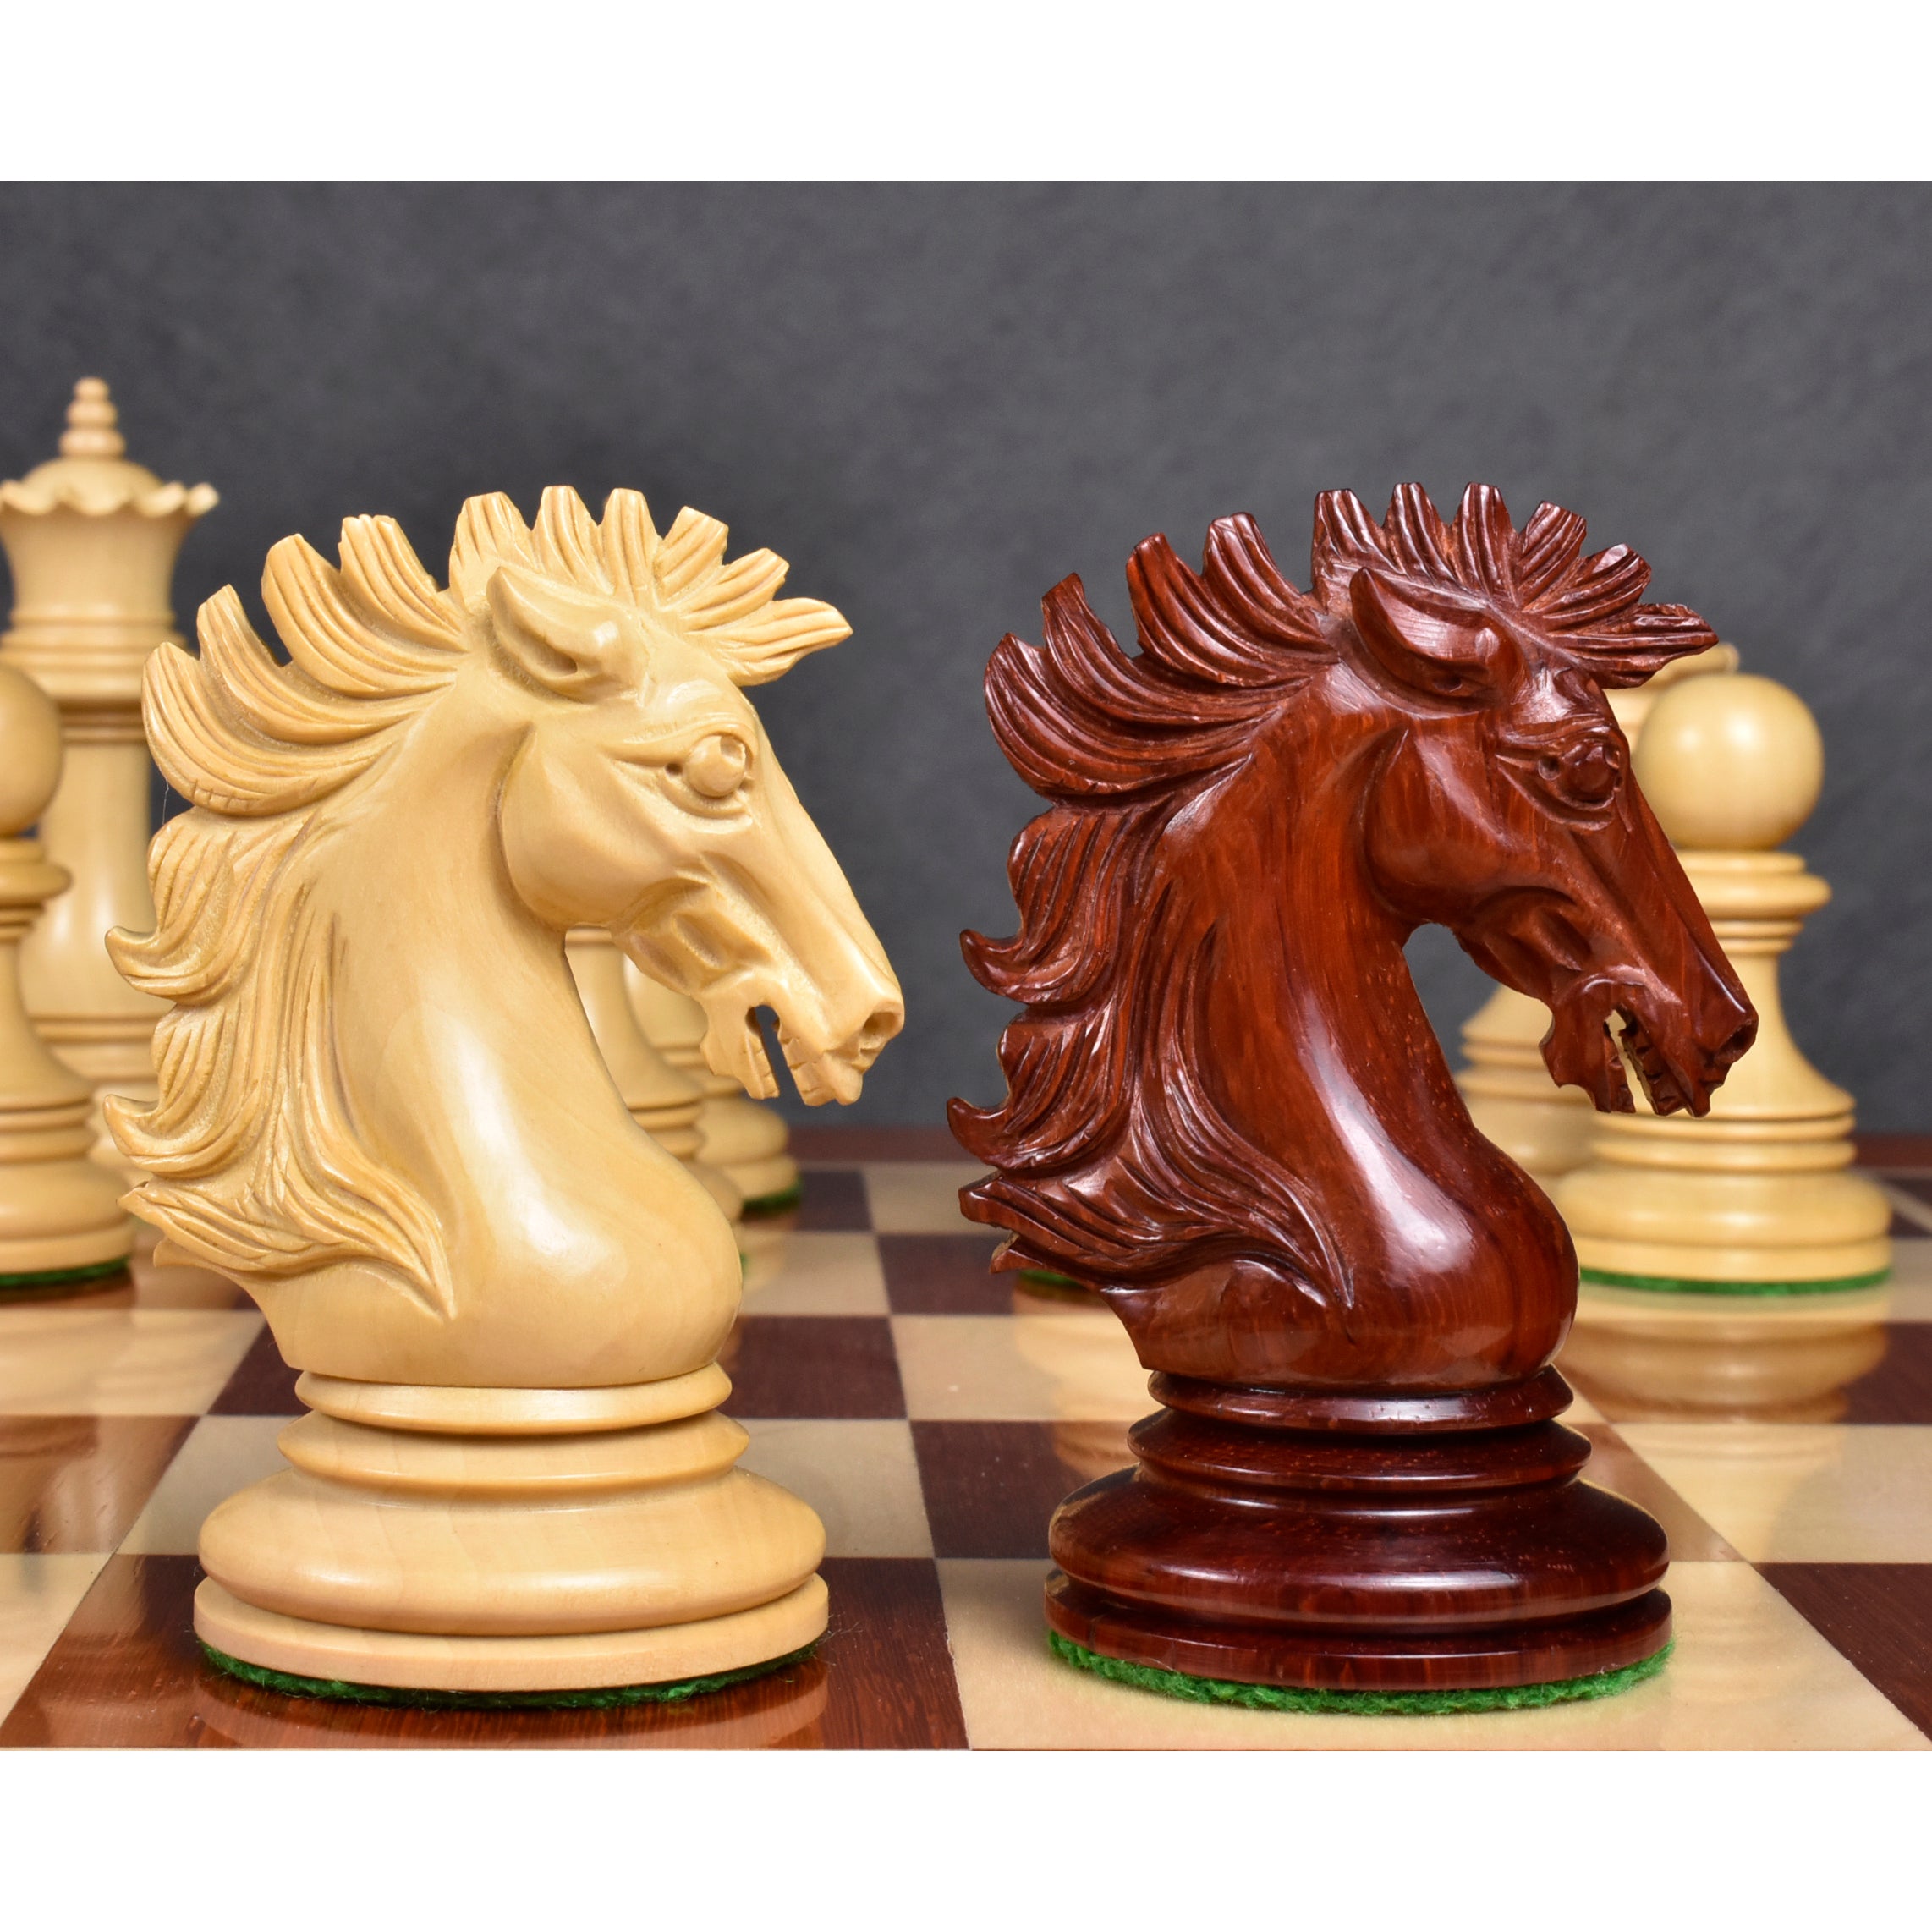 Alexandria Luxury Staunton Chess Pieces Only Set